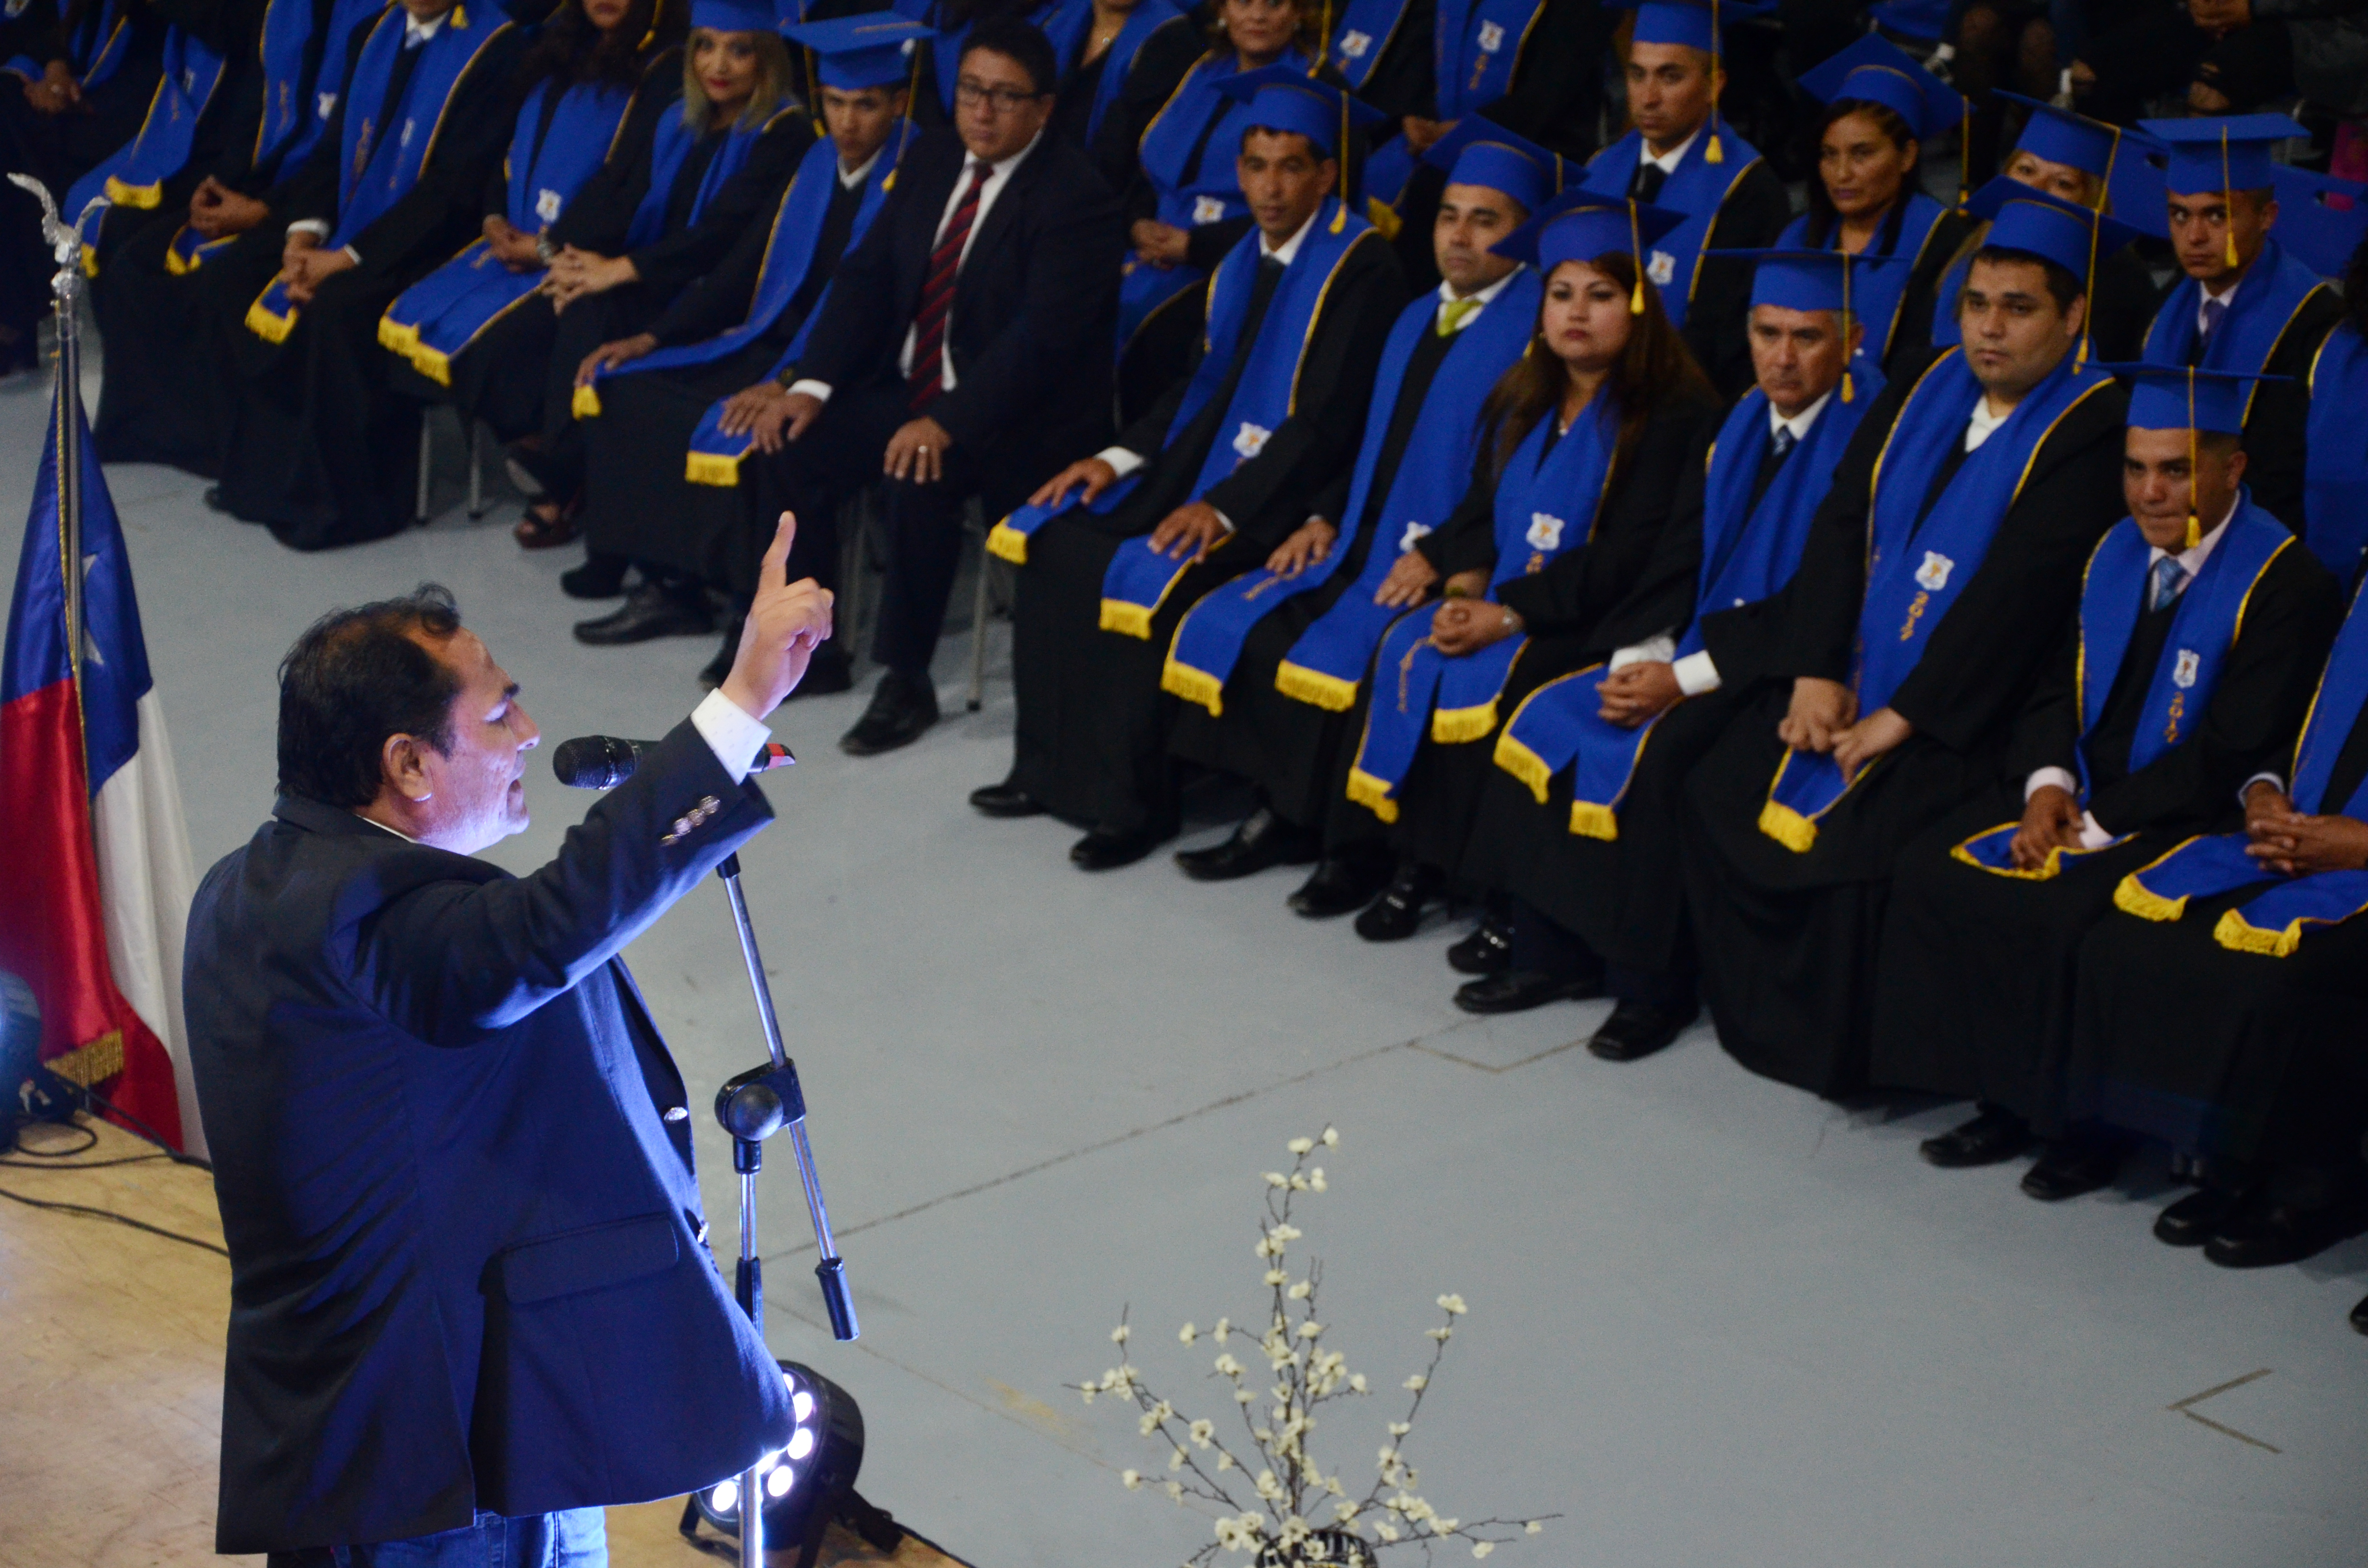 84 alumnos se graduaron como la primera generación de educación nocturna del colegio Simón Bolívar